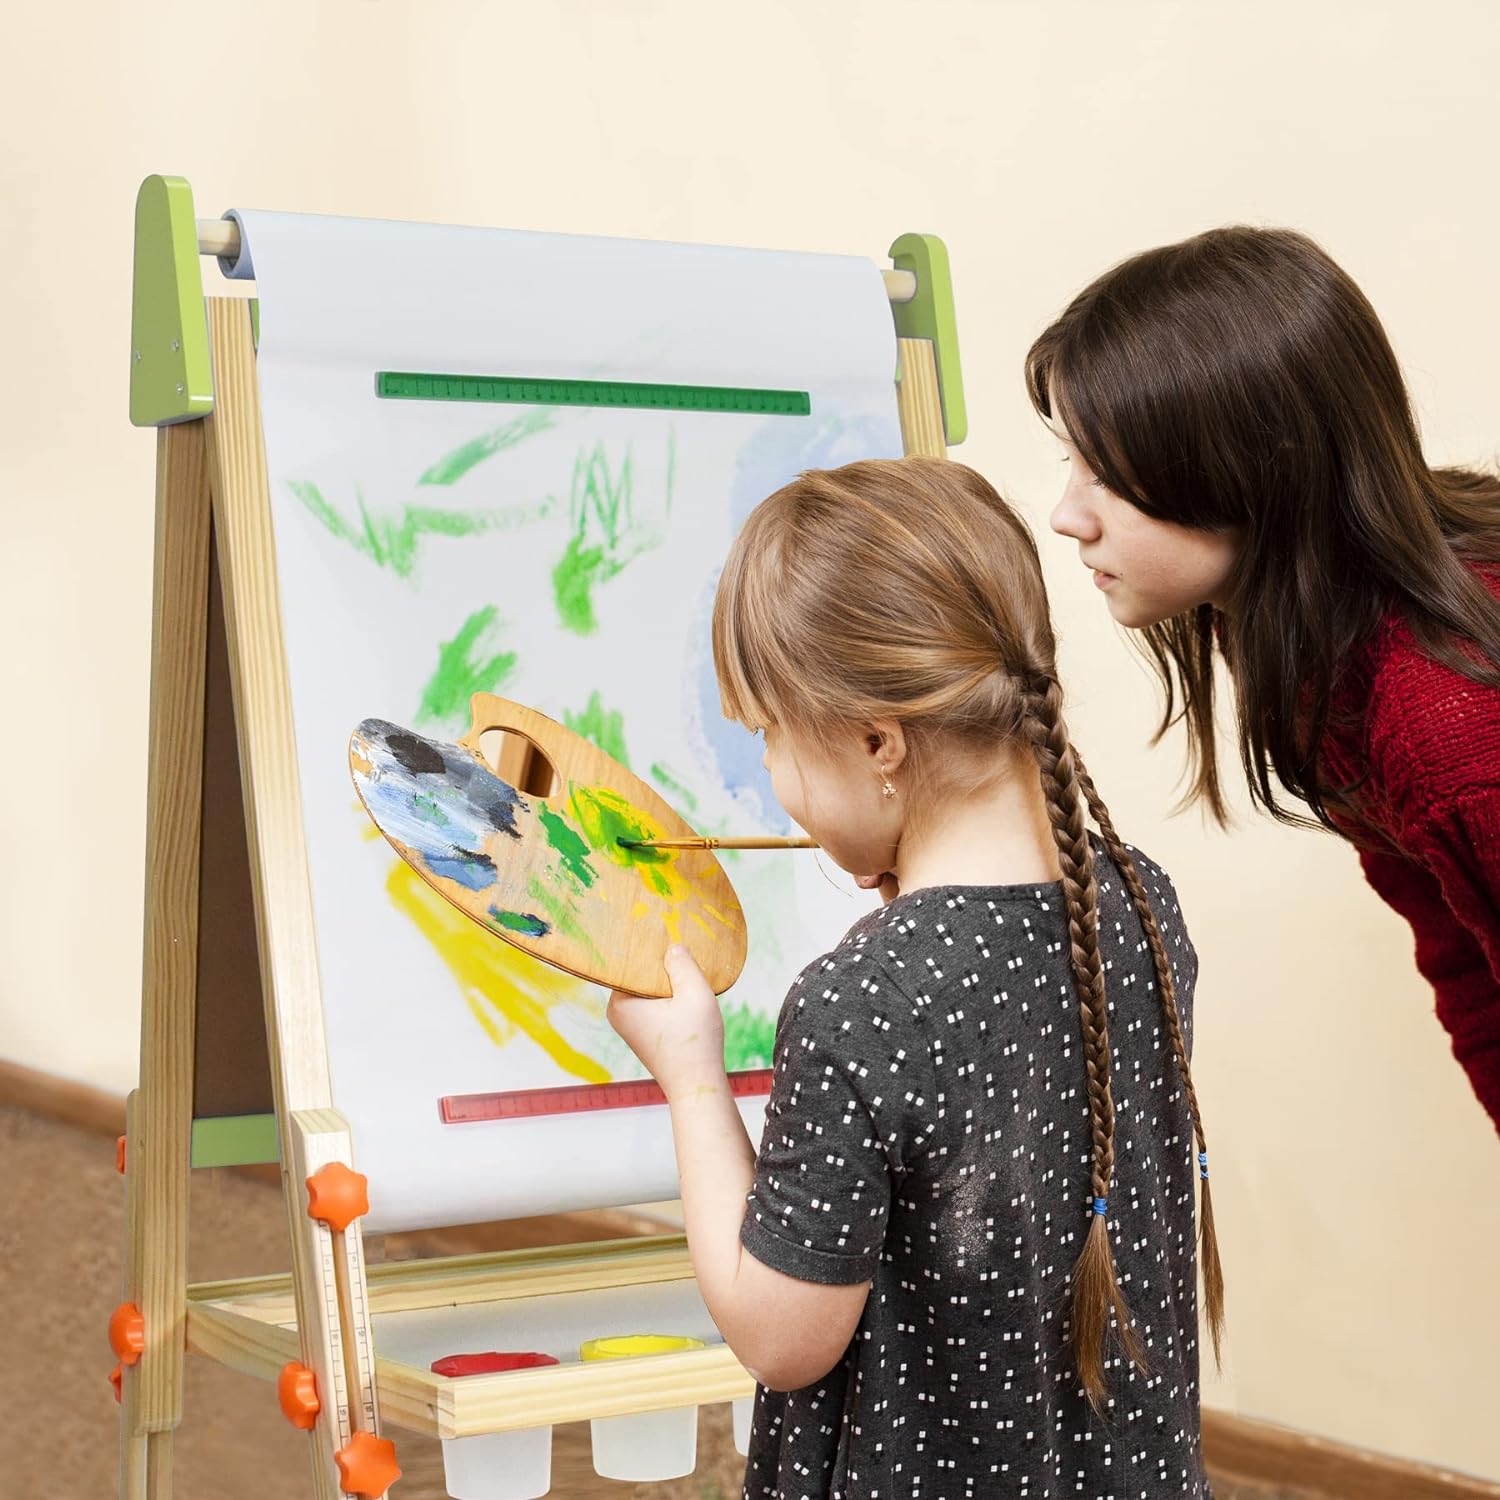 Painting Easel, Art Easel for Kids